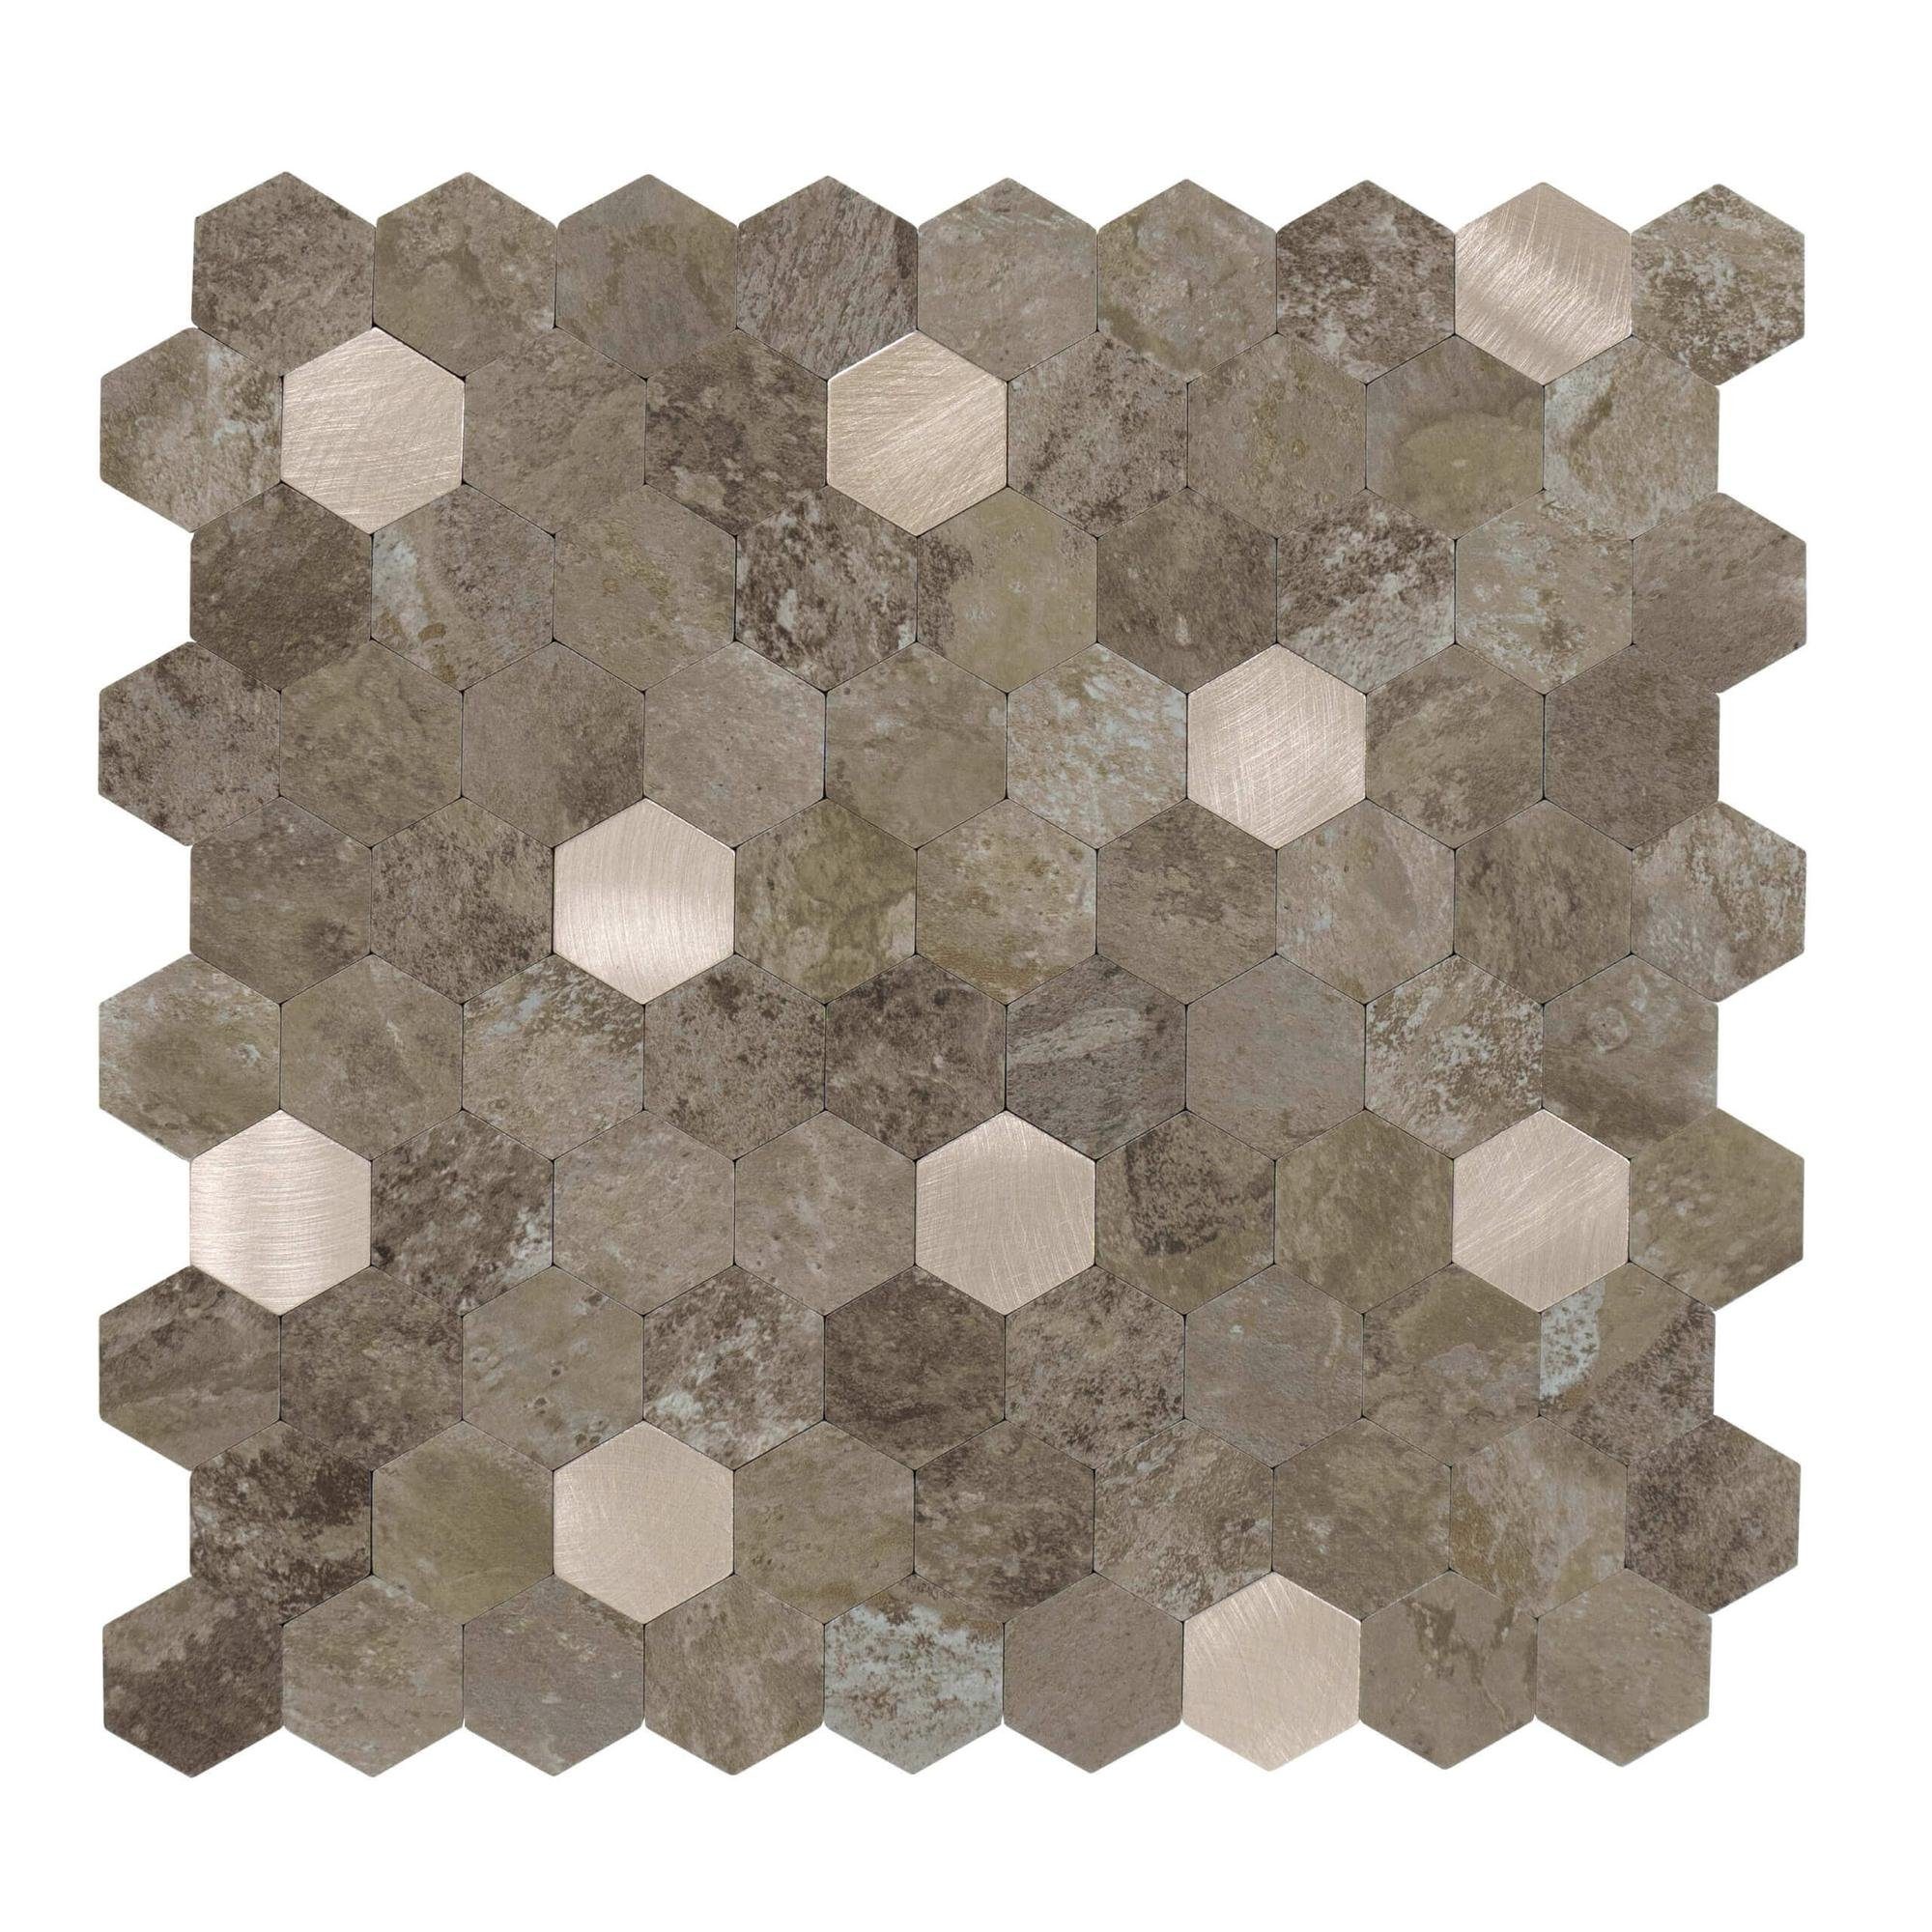 Dalsys Wandpaneel 0,88m² 11 Stück selbstklebend, (Braun Gold Hexagon, 11-tlg., Wandfliese) feuchtigskeitsbeständig, einfach montiert, hochwertiges Material